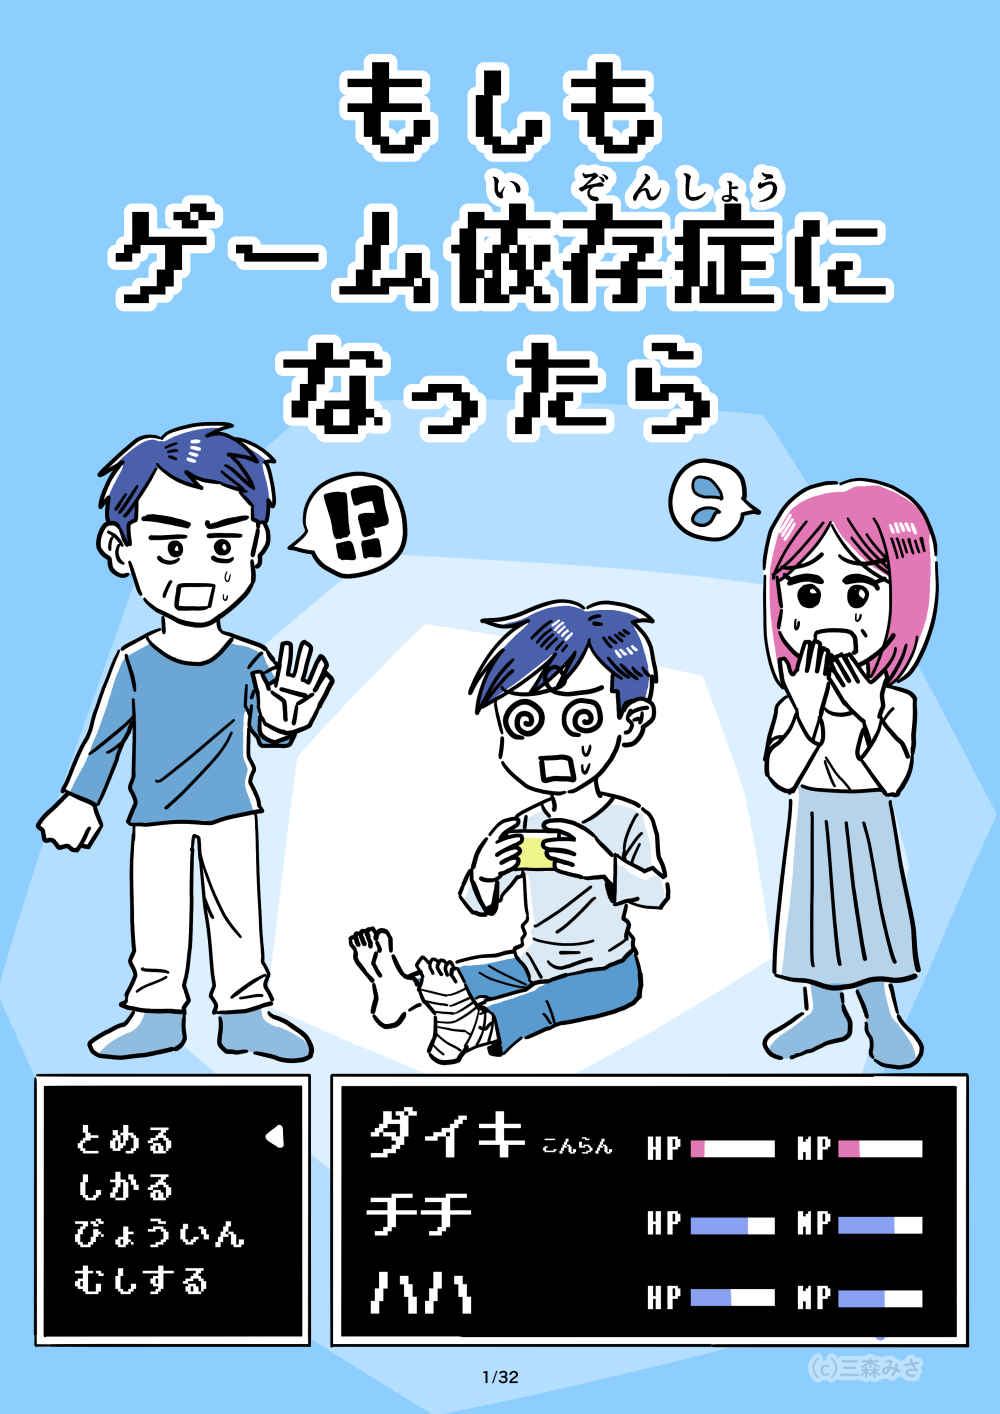 ゲーム依存症啓発漫画 Mimorimisa Art Graphics